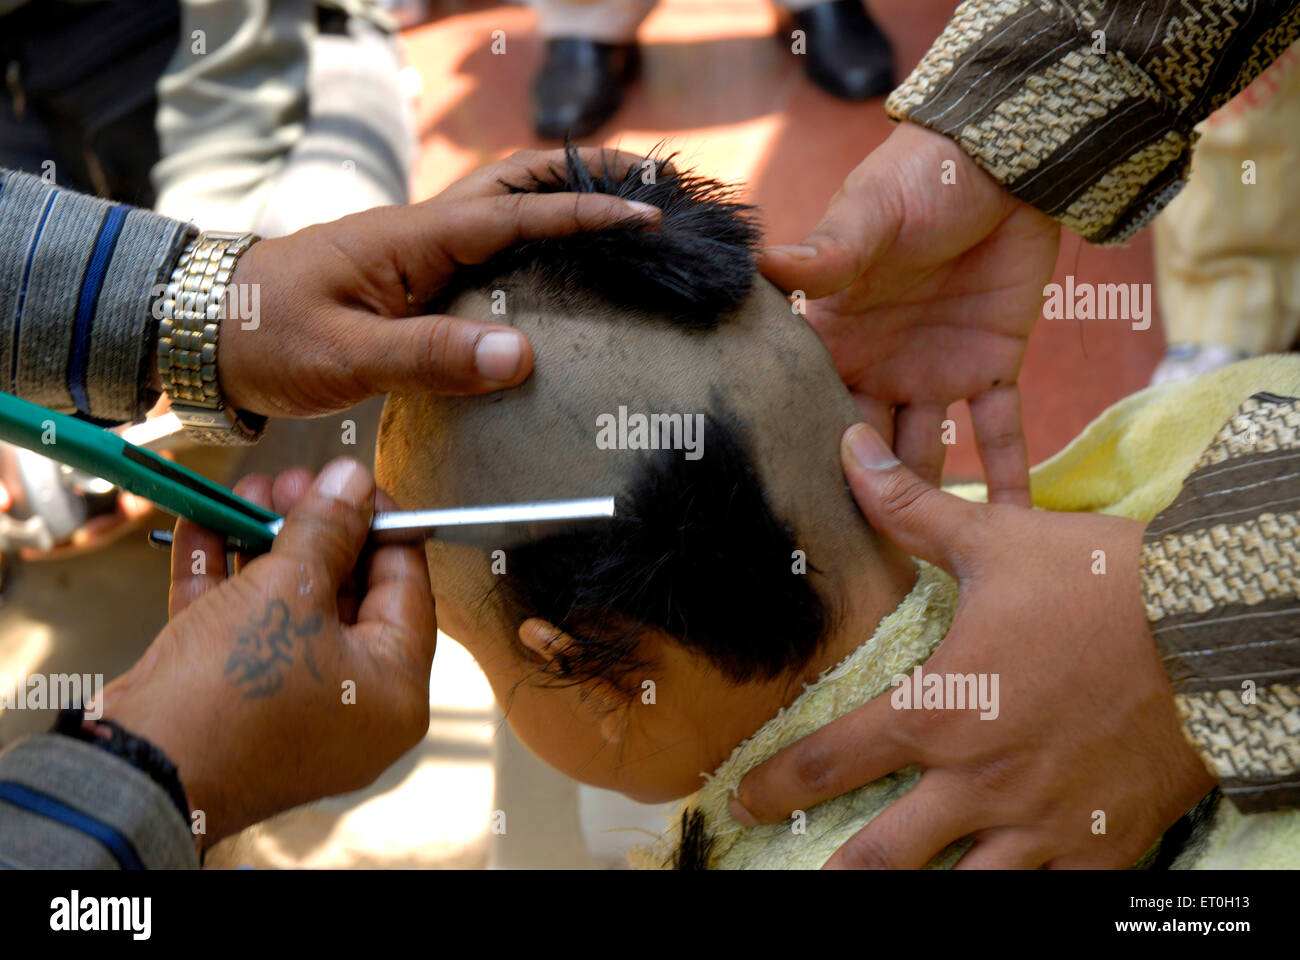 Mundan ceremony, Chudakarana ceremony, Mundana ceremony, tonsure haircut, thread ceremony of five year old boy, India, Asia,  MR#721 Stock Photo